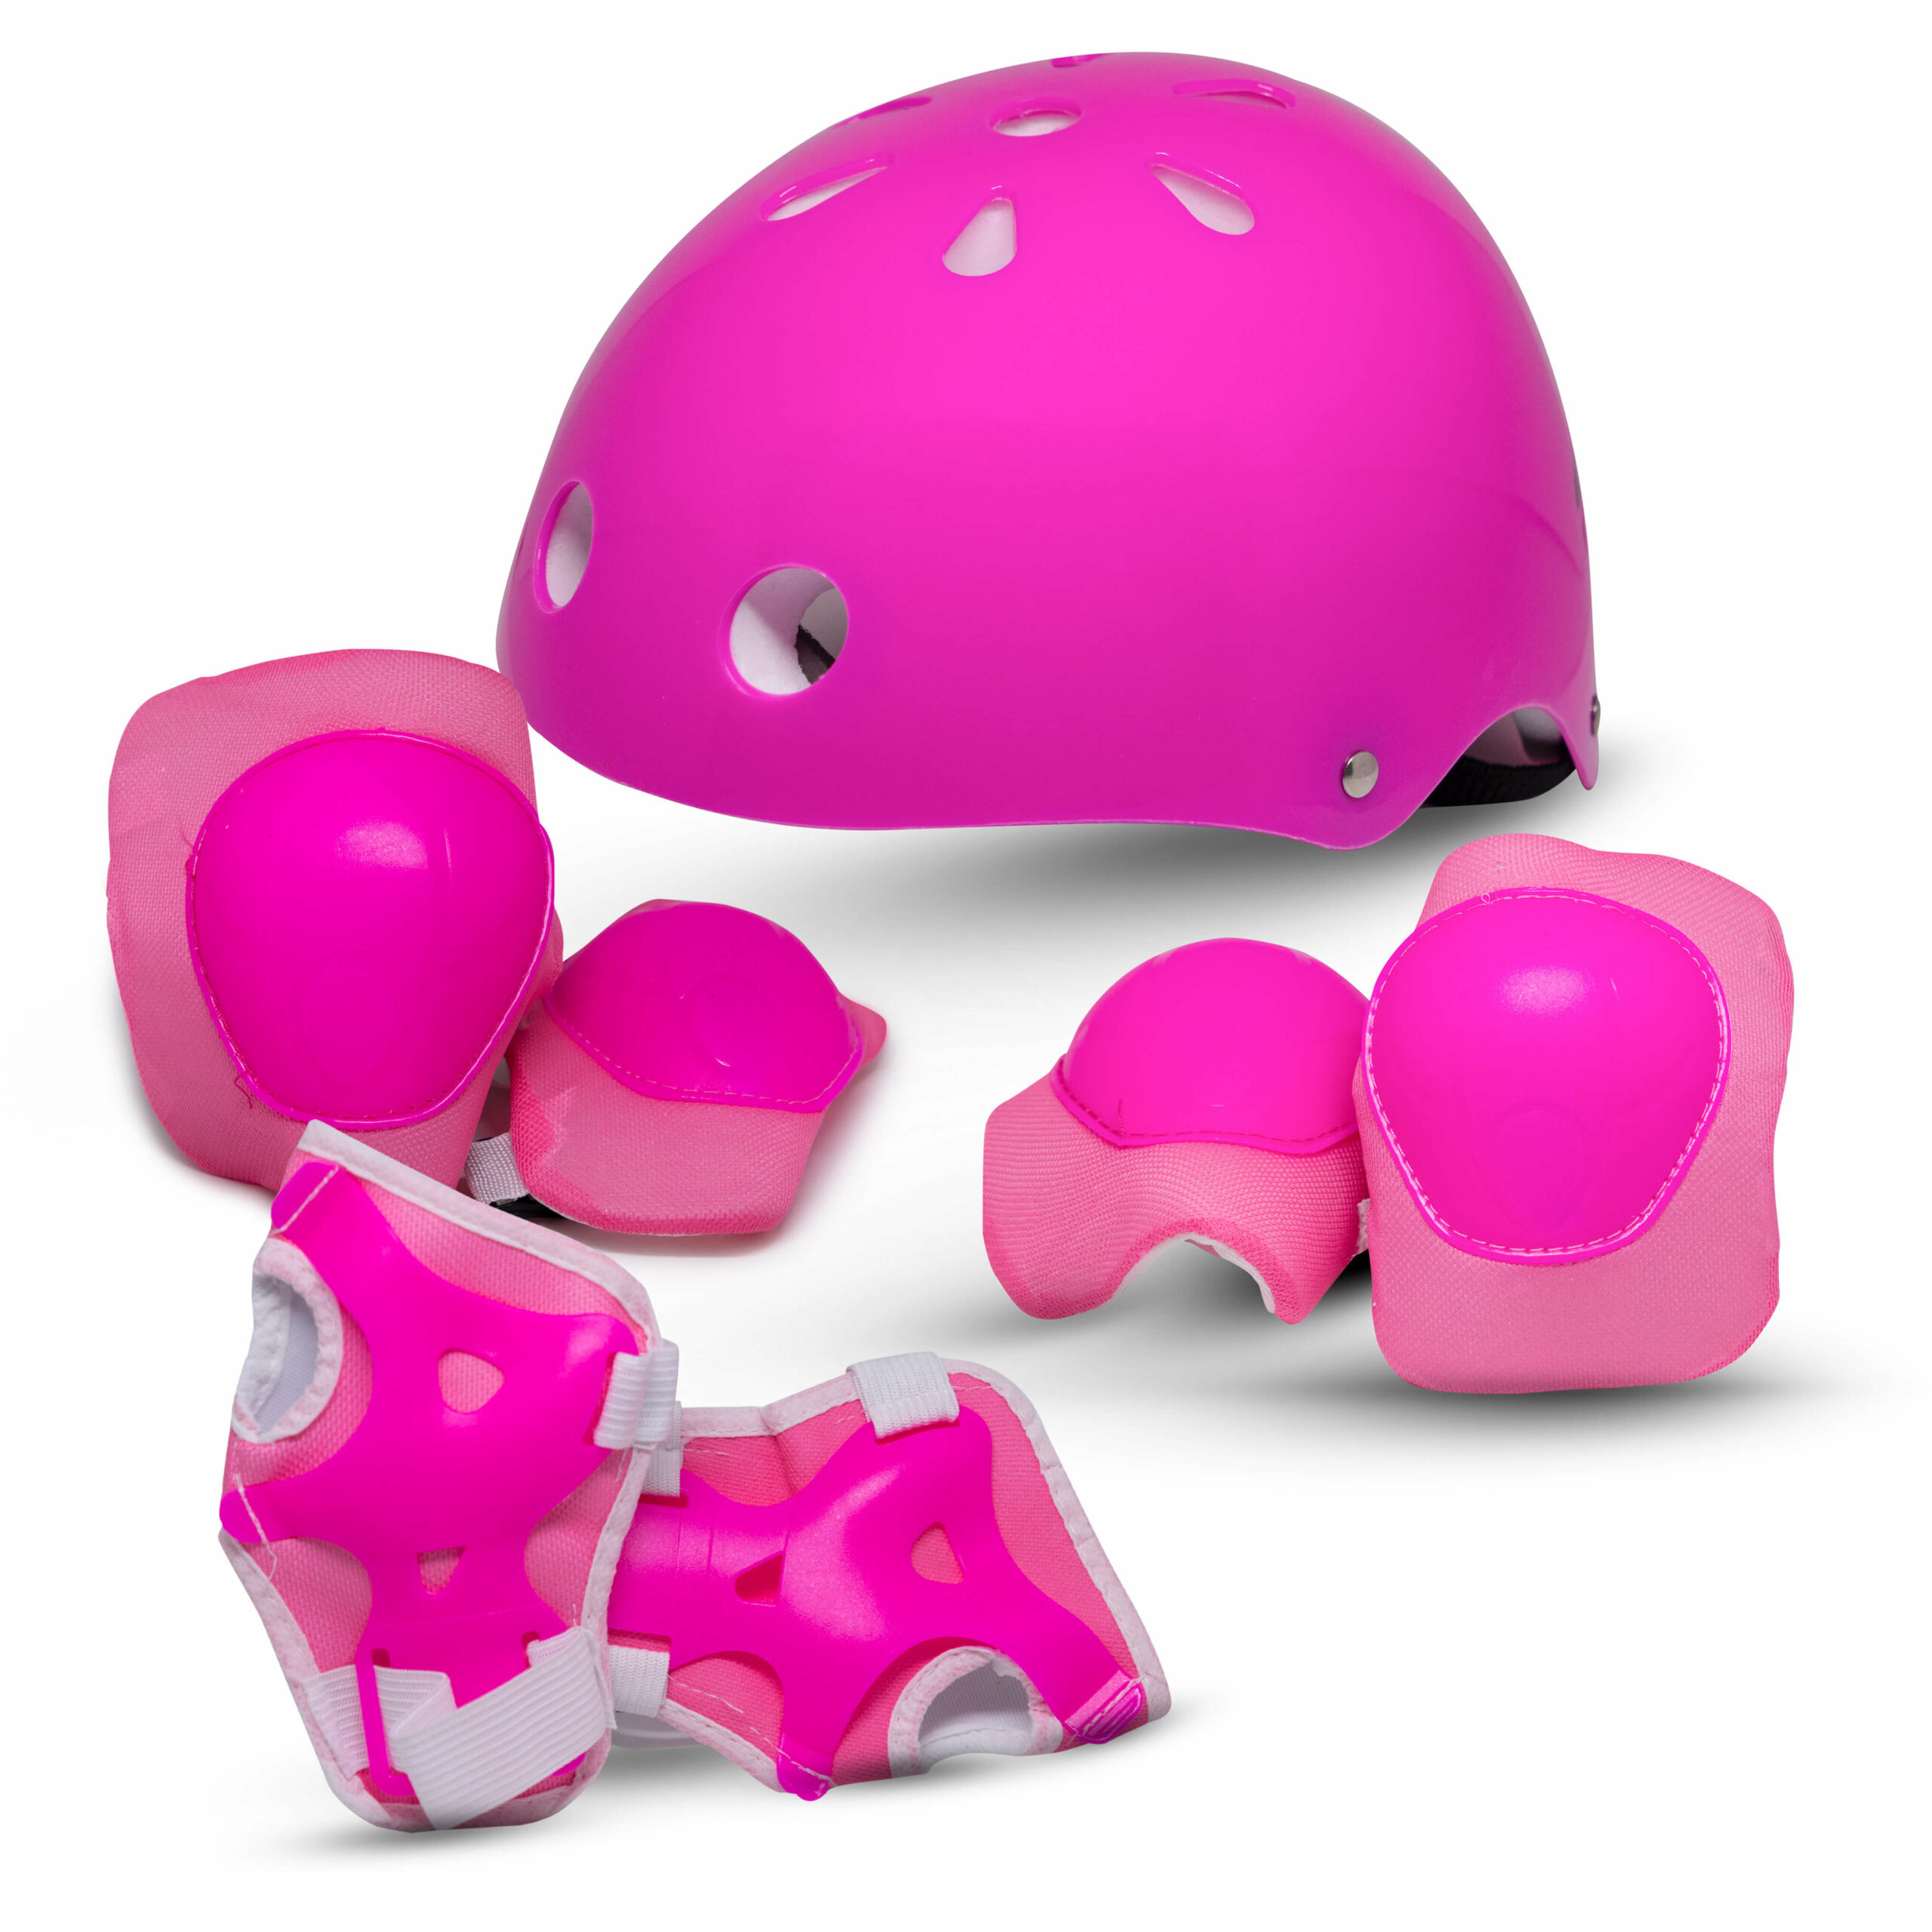 Capacete com kit proteção Little child | Rava Play - Pink